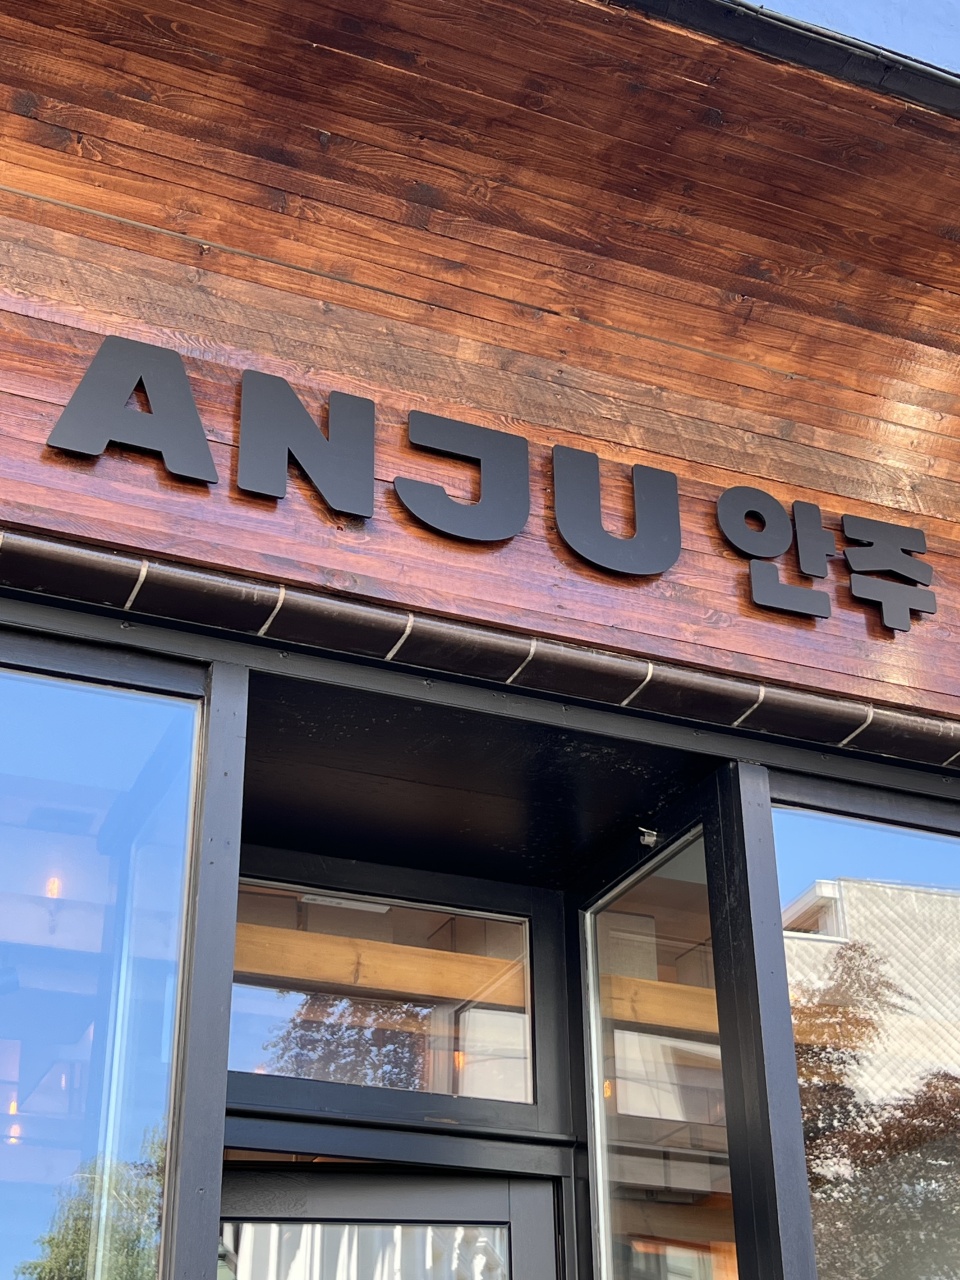 Exterieur van het Anju restaurant in Brussel, met kenmerkende rode krukjes op het straatterras en een uitnodigende, gezellige sfeer.